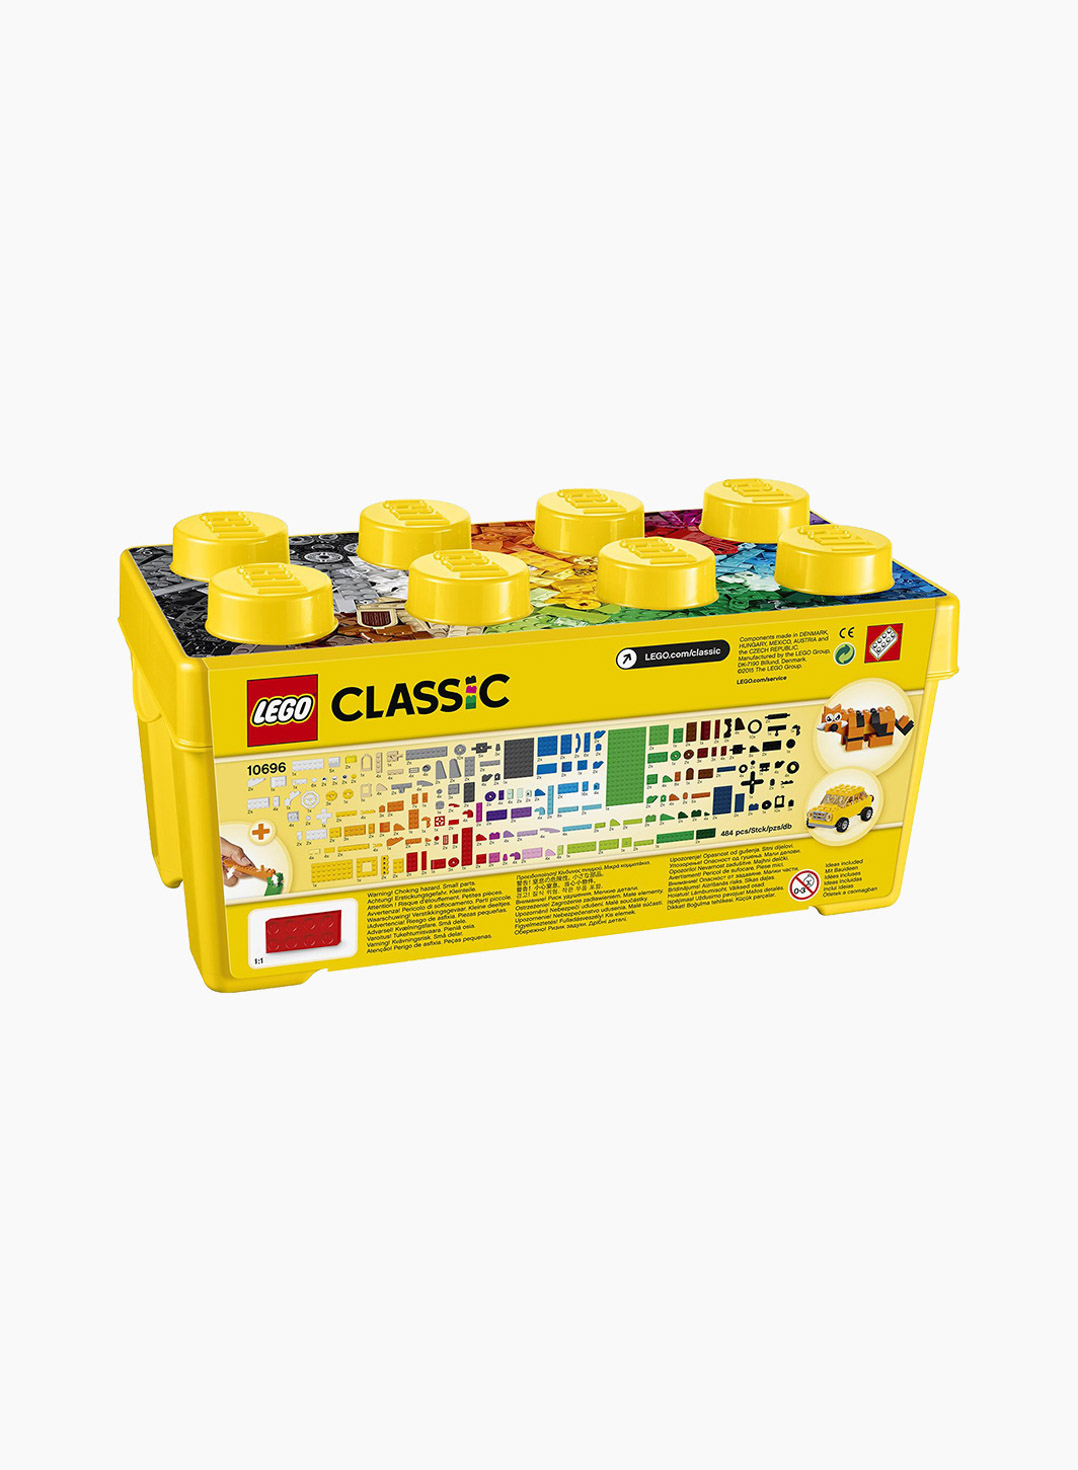 Lego Classic Կառուցողական Խաղ Ստեղծագործելու Հավաքածու. Միջին Չափ